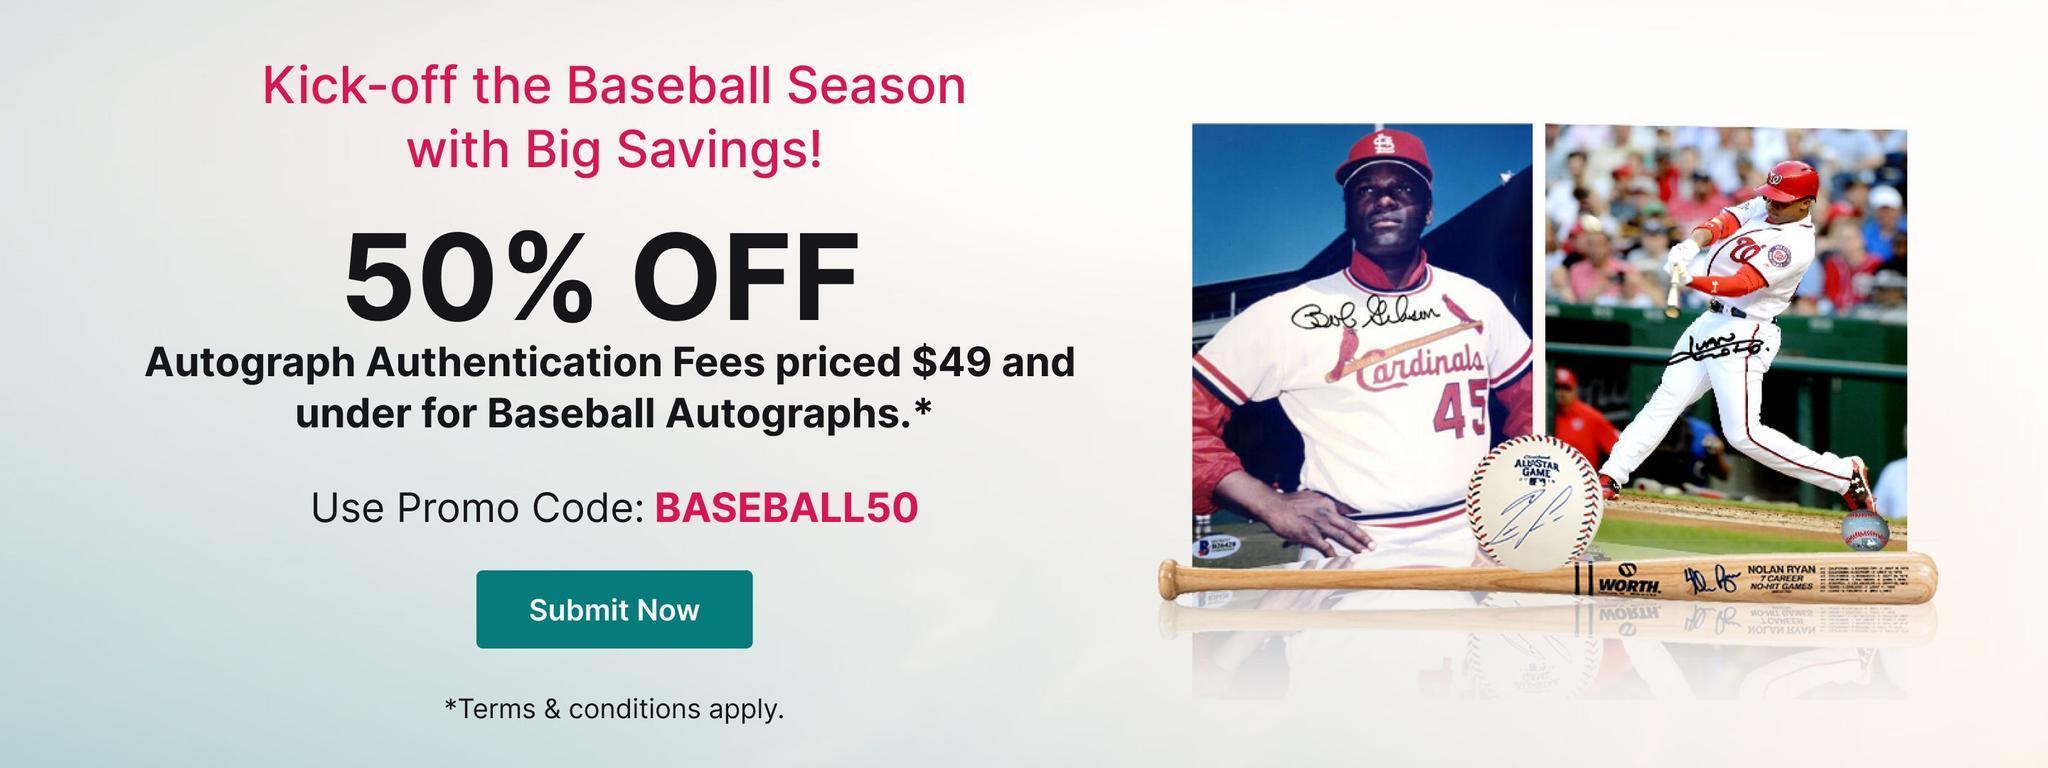 Kick-off the Baseball Season with Big Savings!